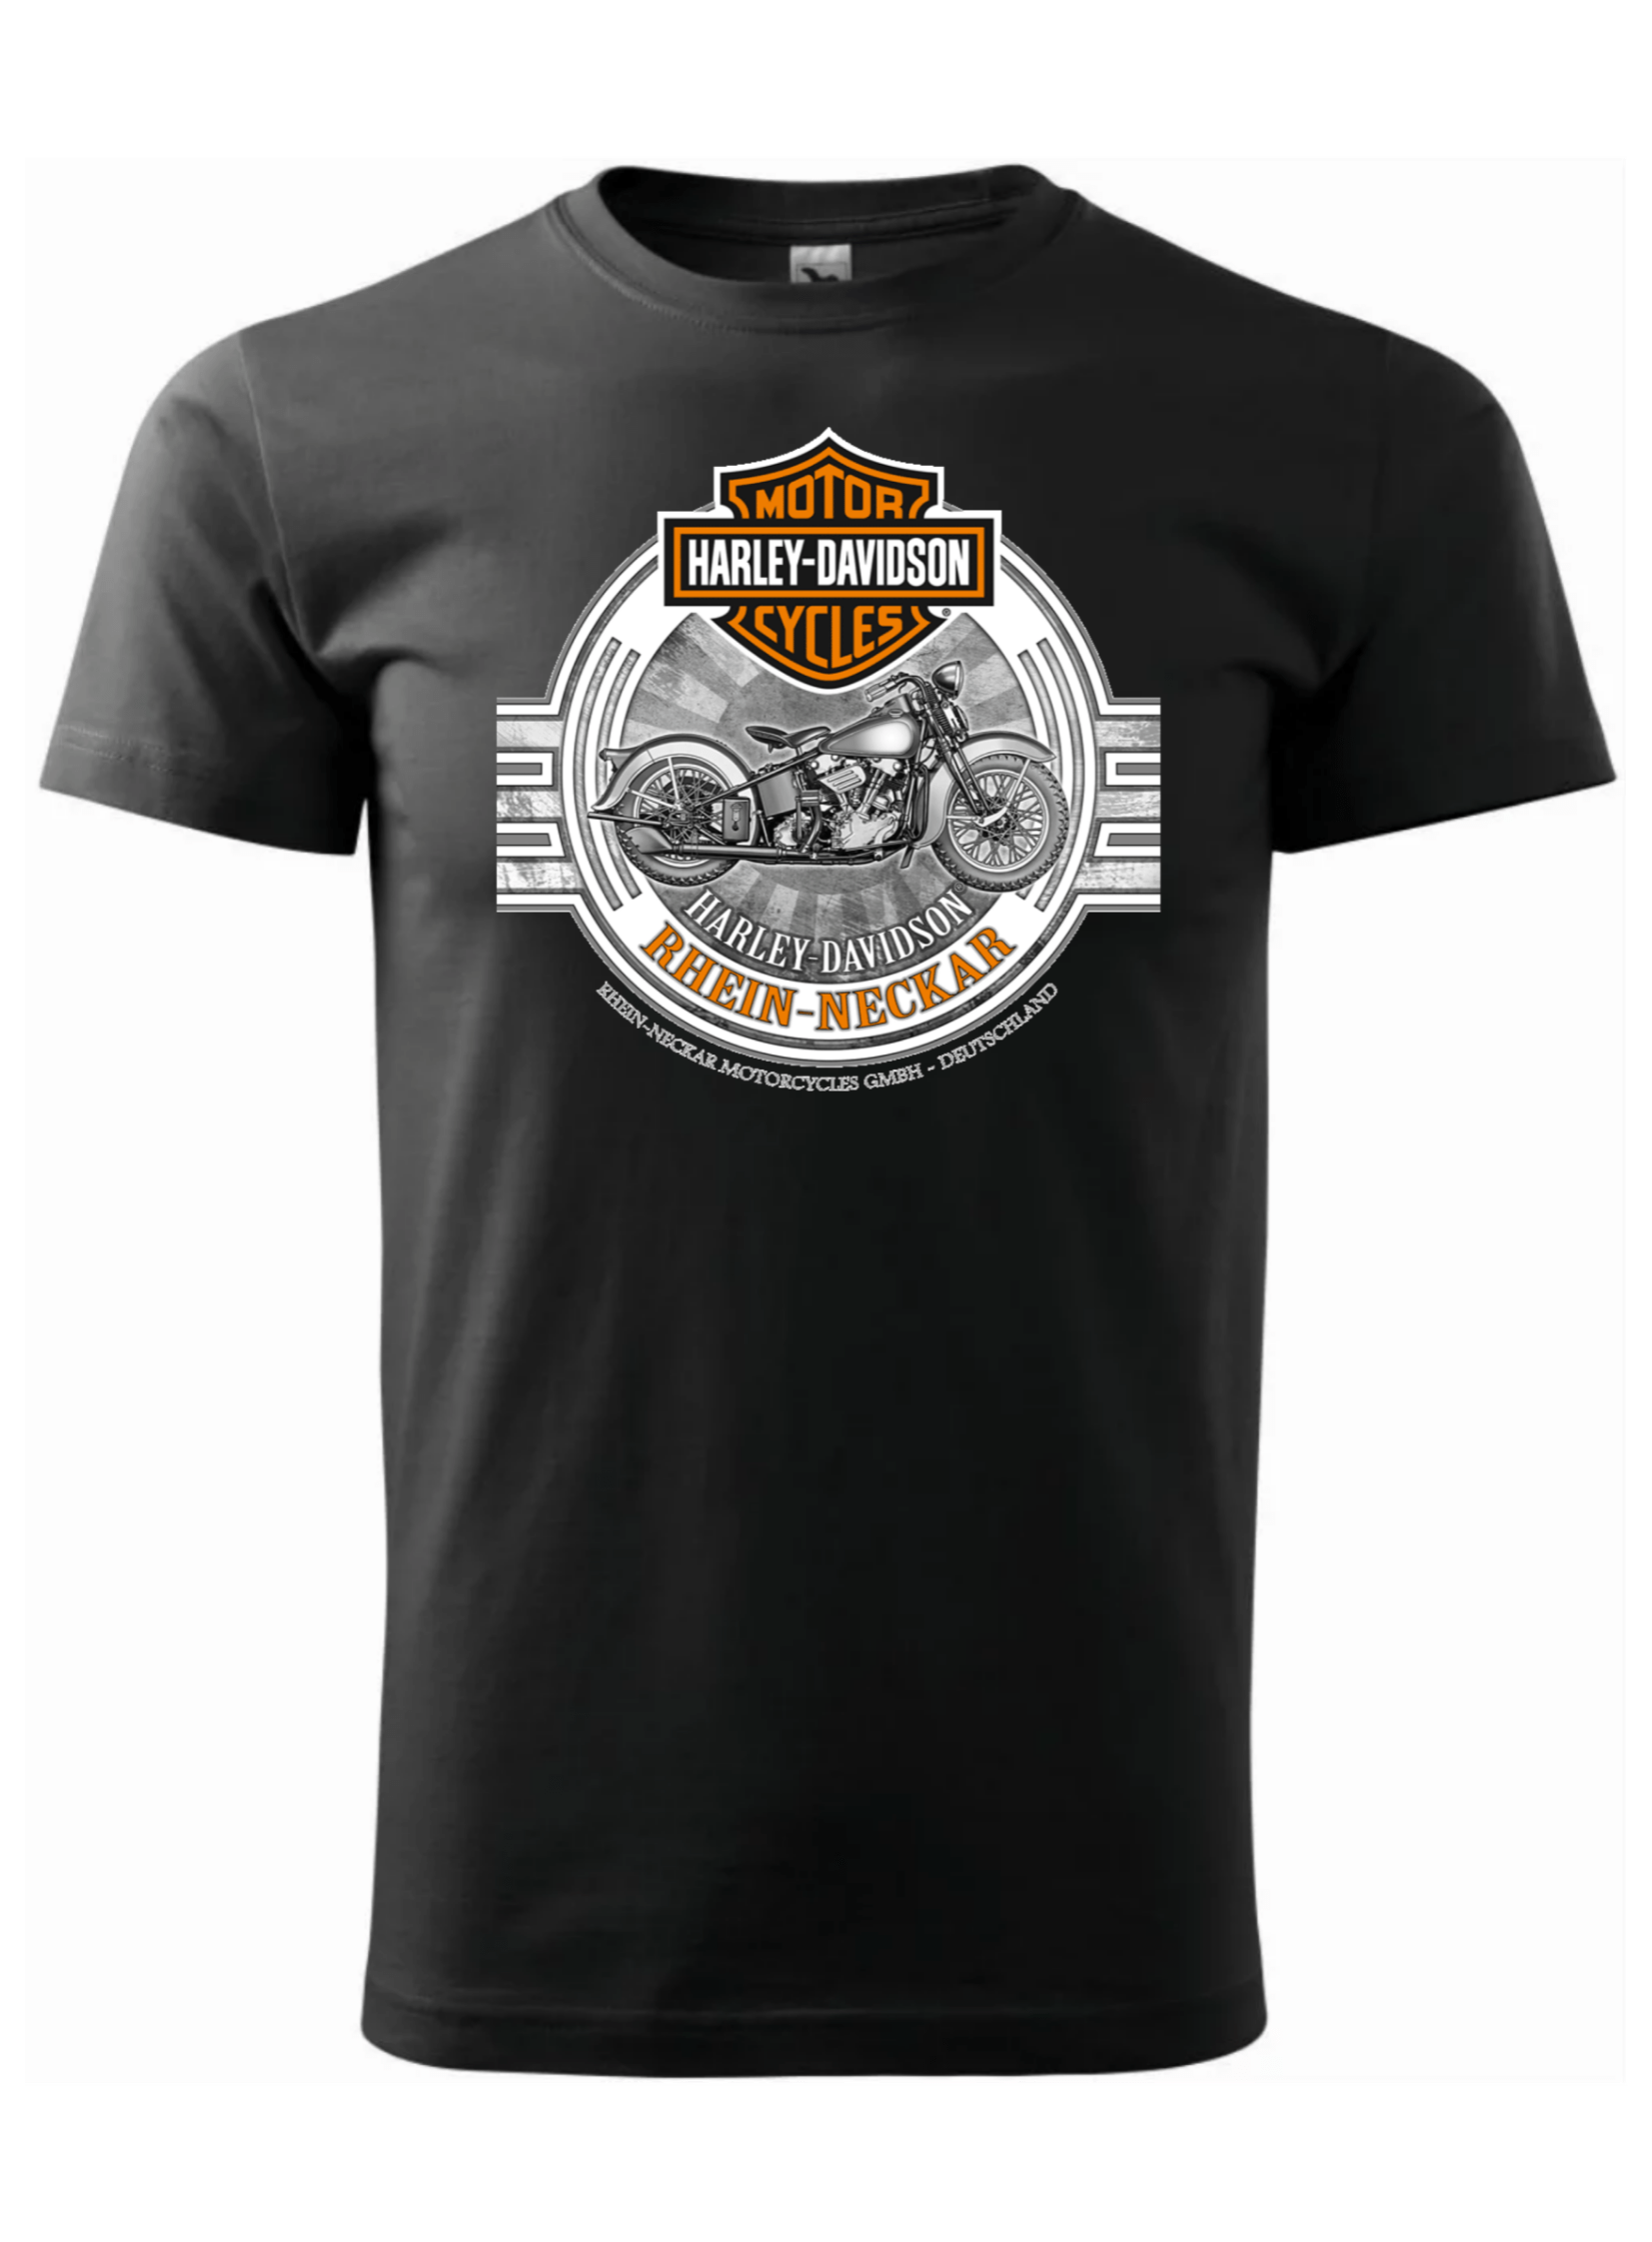 Pánské tričko s potiskem značky Harley Davidson 17